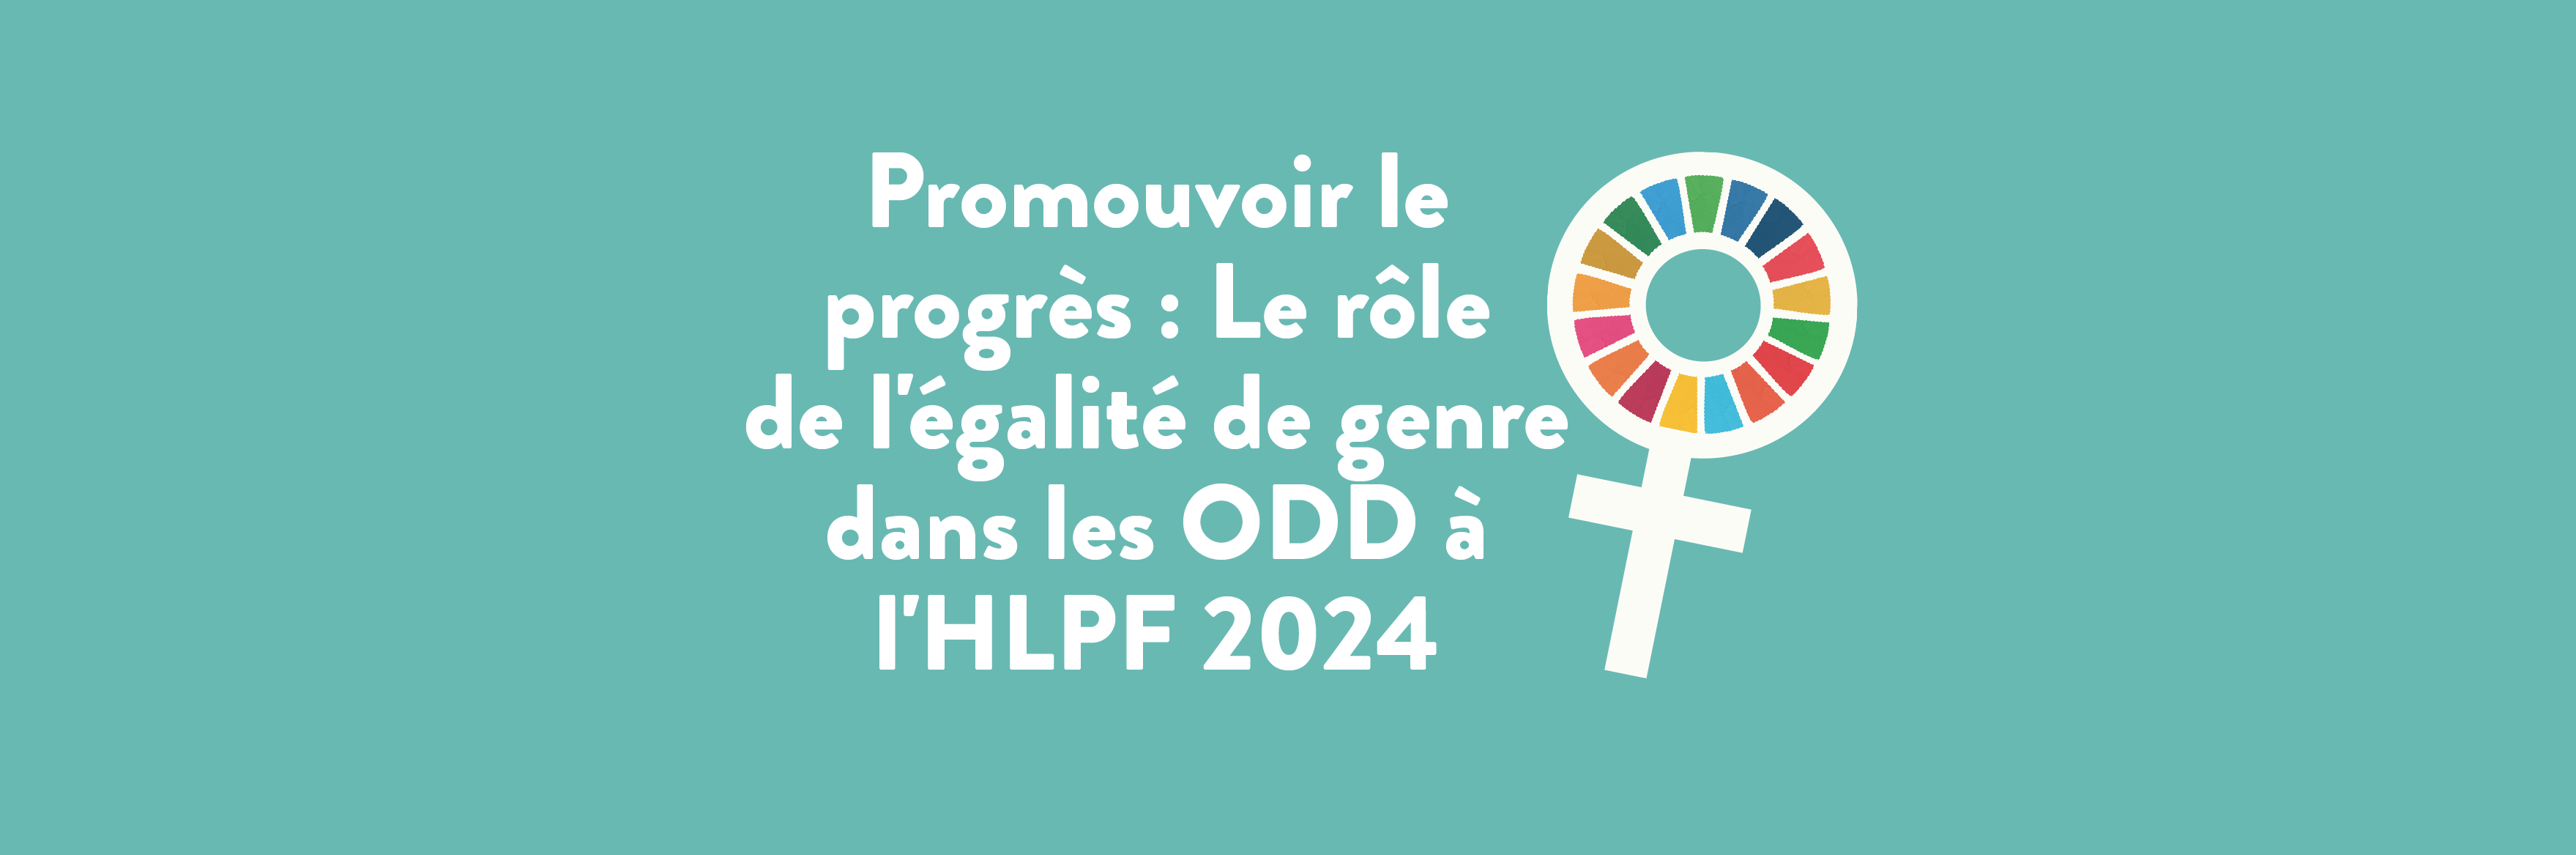 Promouvoir le progrès : Le rôle de l’égalité de genre dans les ODD à l’HLPF 2024 